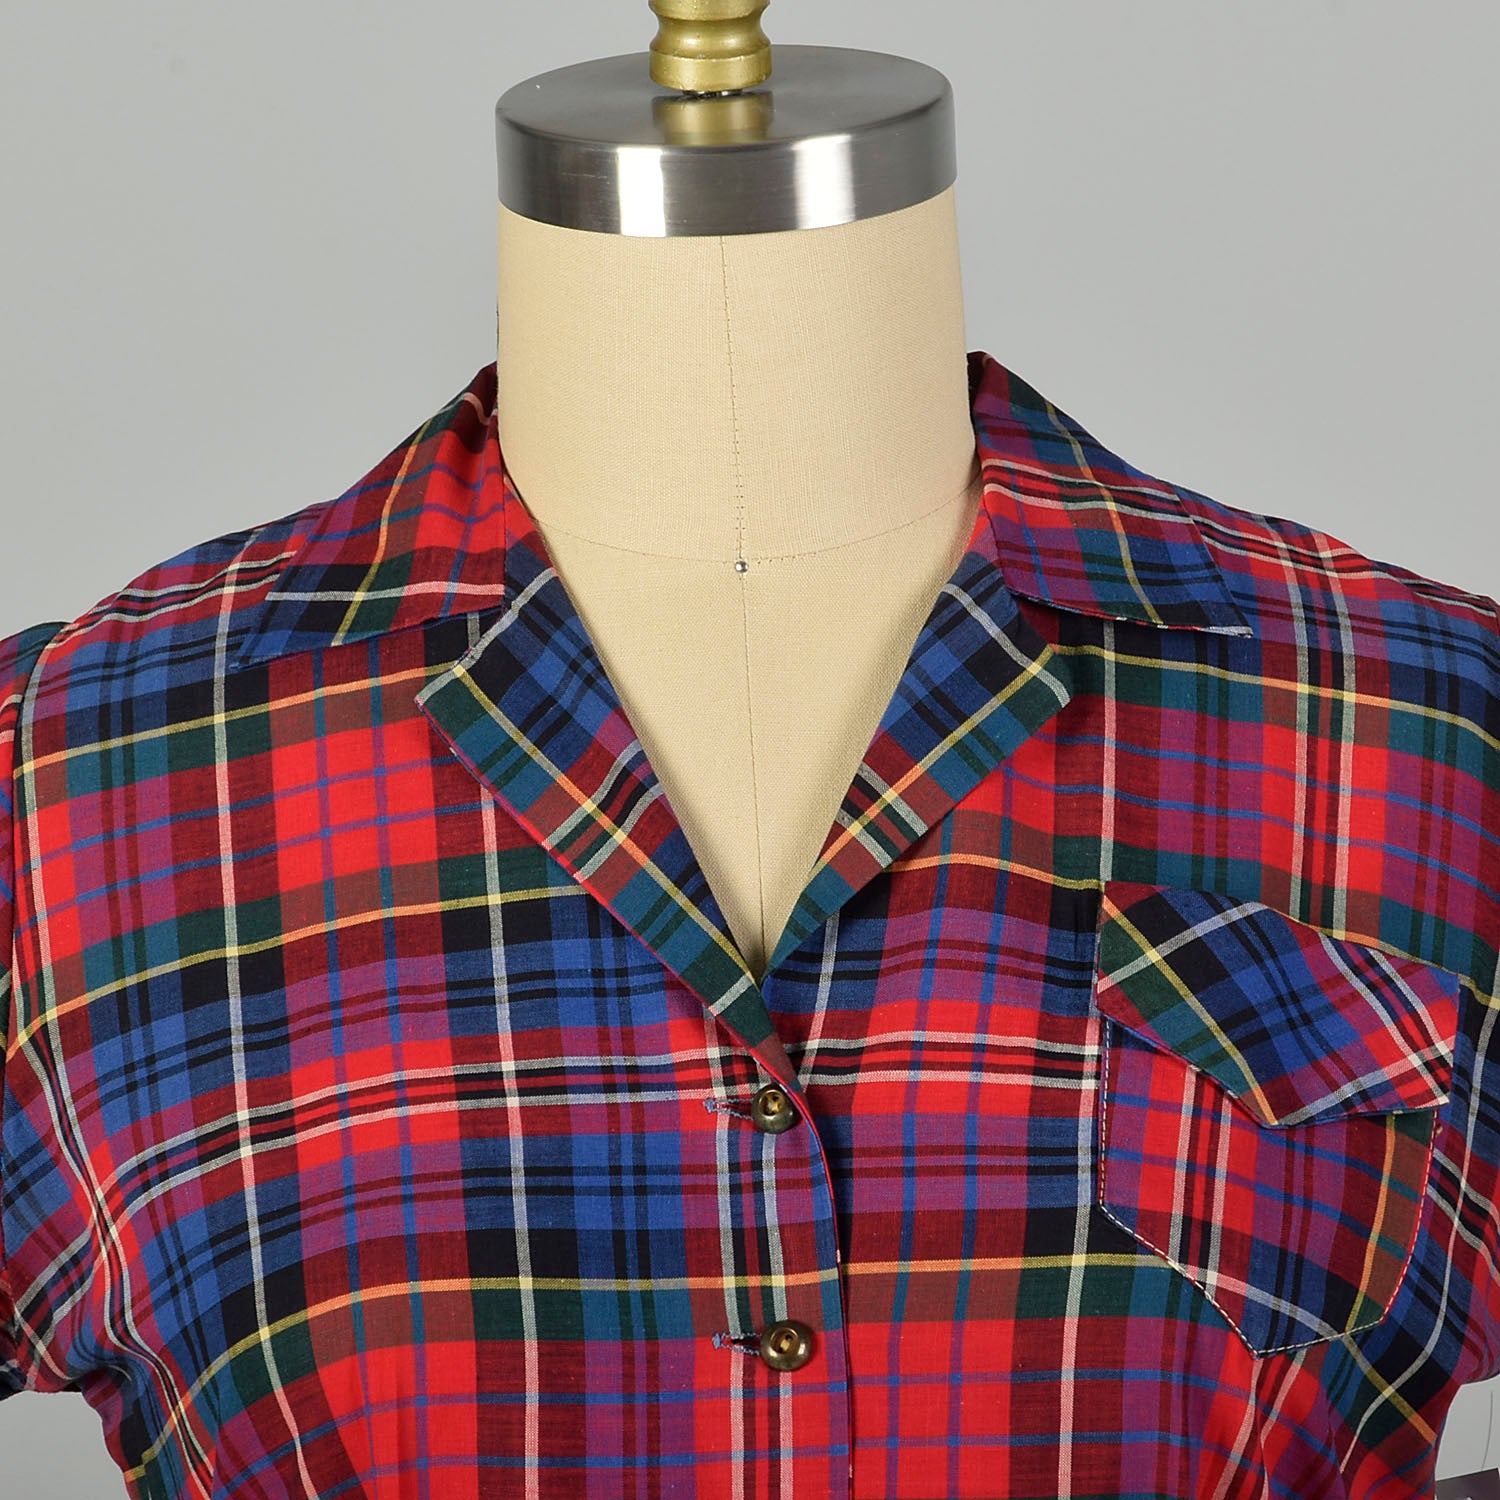 XL 1950s Red Plaid Day Dress Short Sleeve Collared Summer Shirtwaist